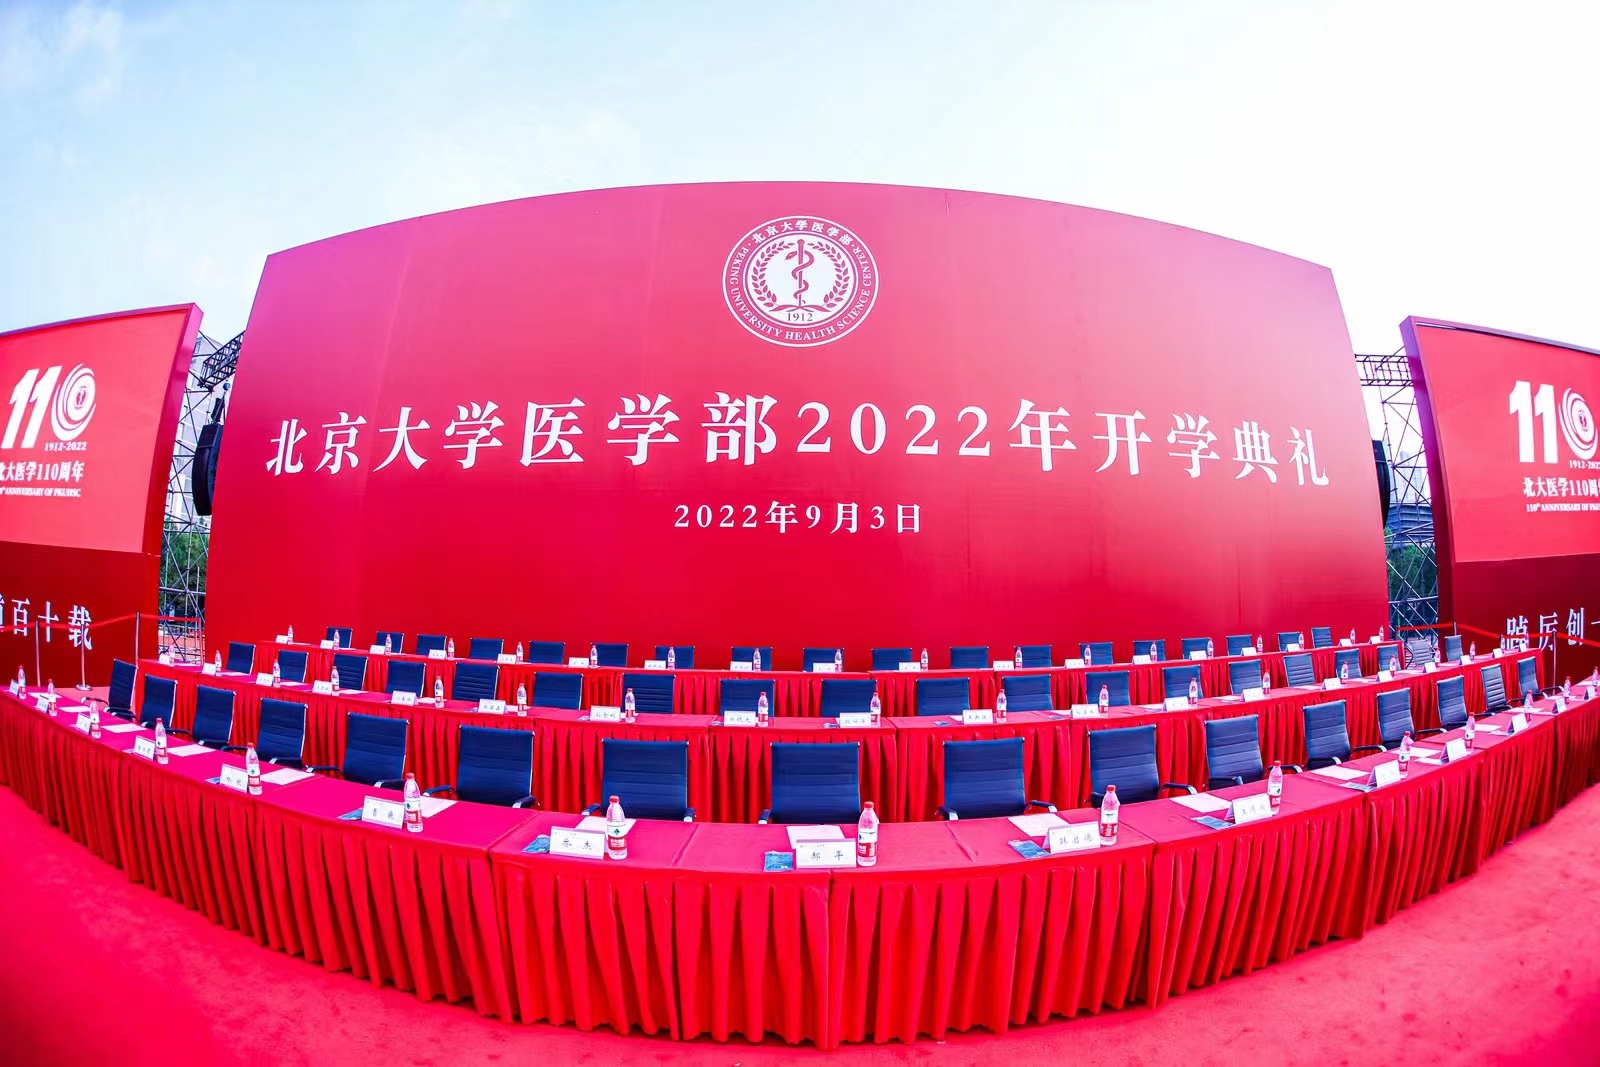 北京大学医学部2022年开学典礼拍摄策划活动